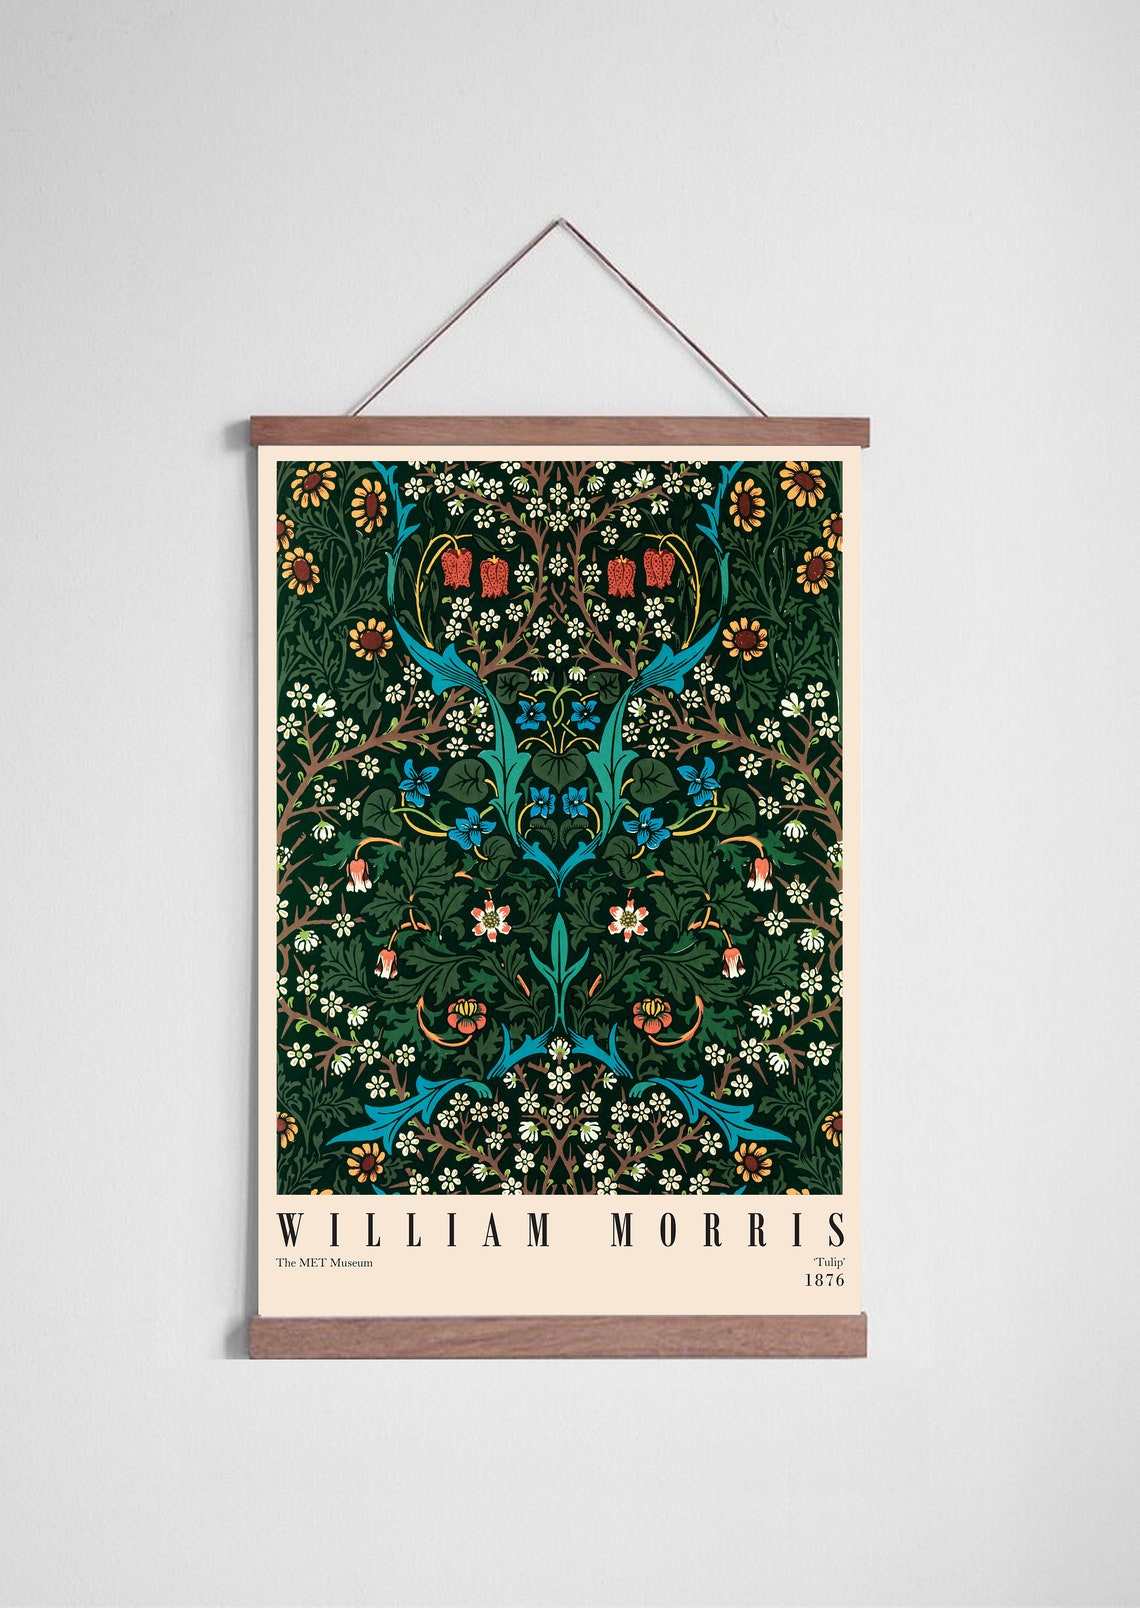 William Morris Exhibition Poster William Morris Print Art | Etsy